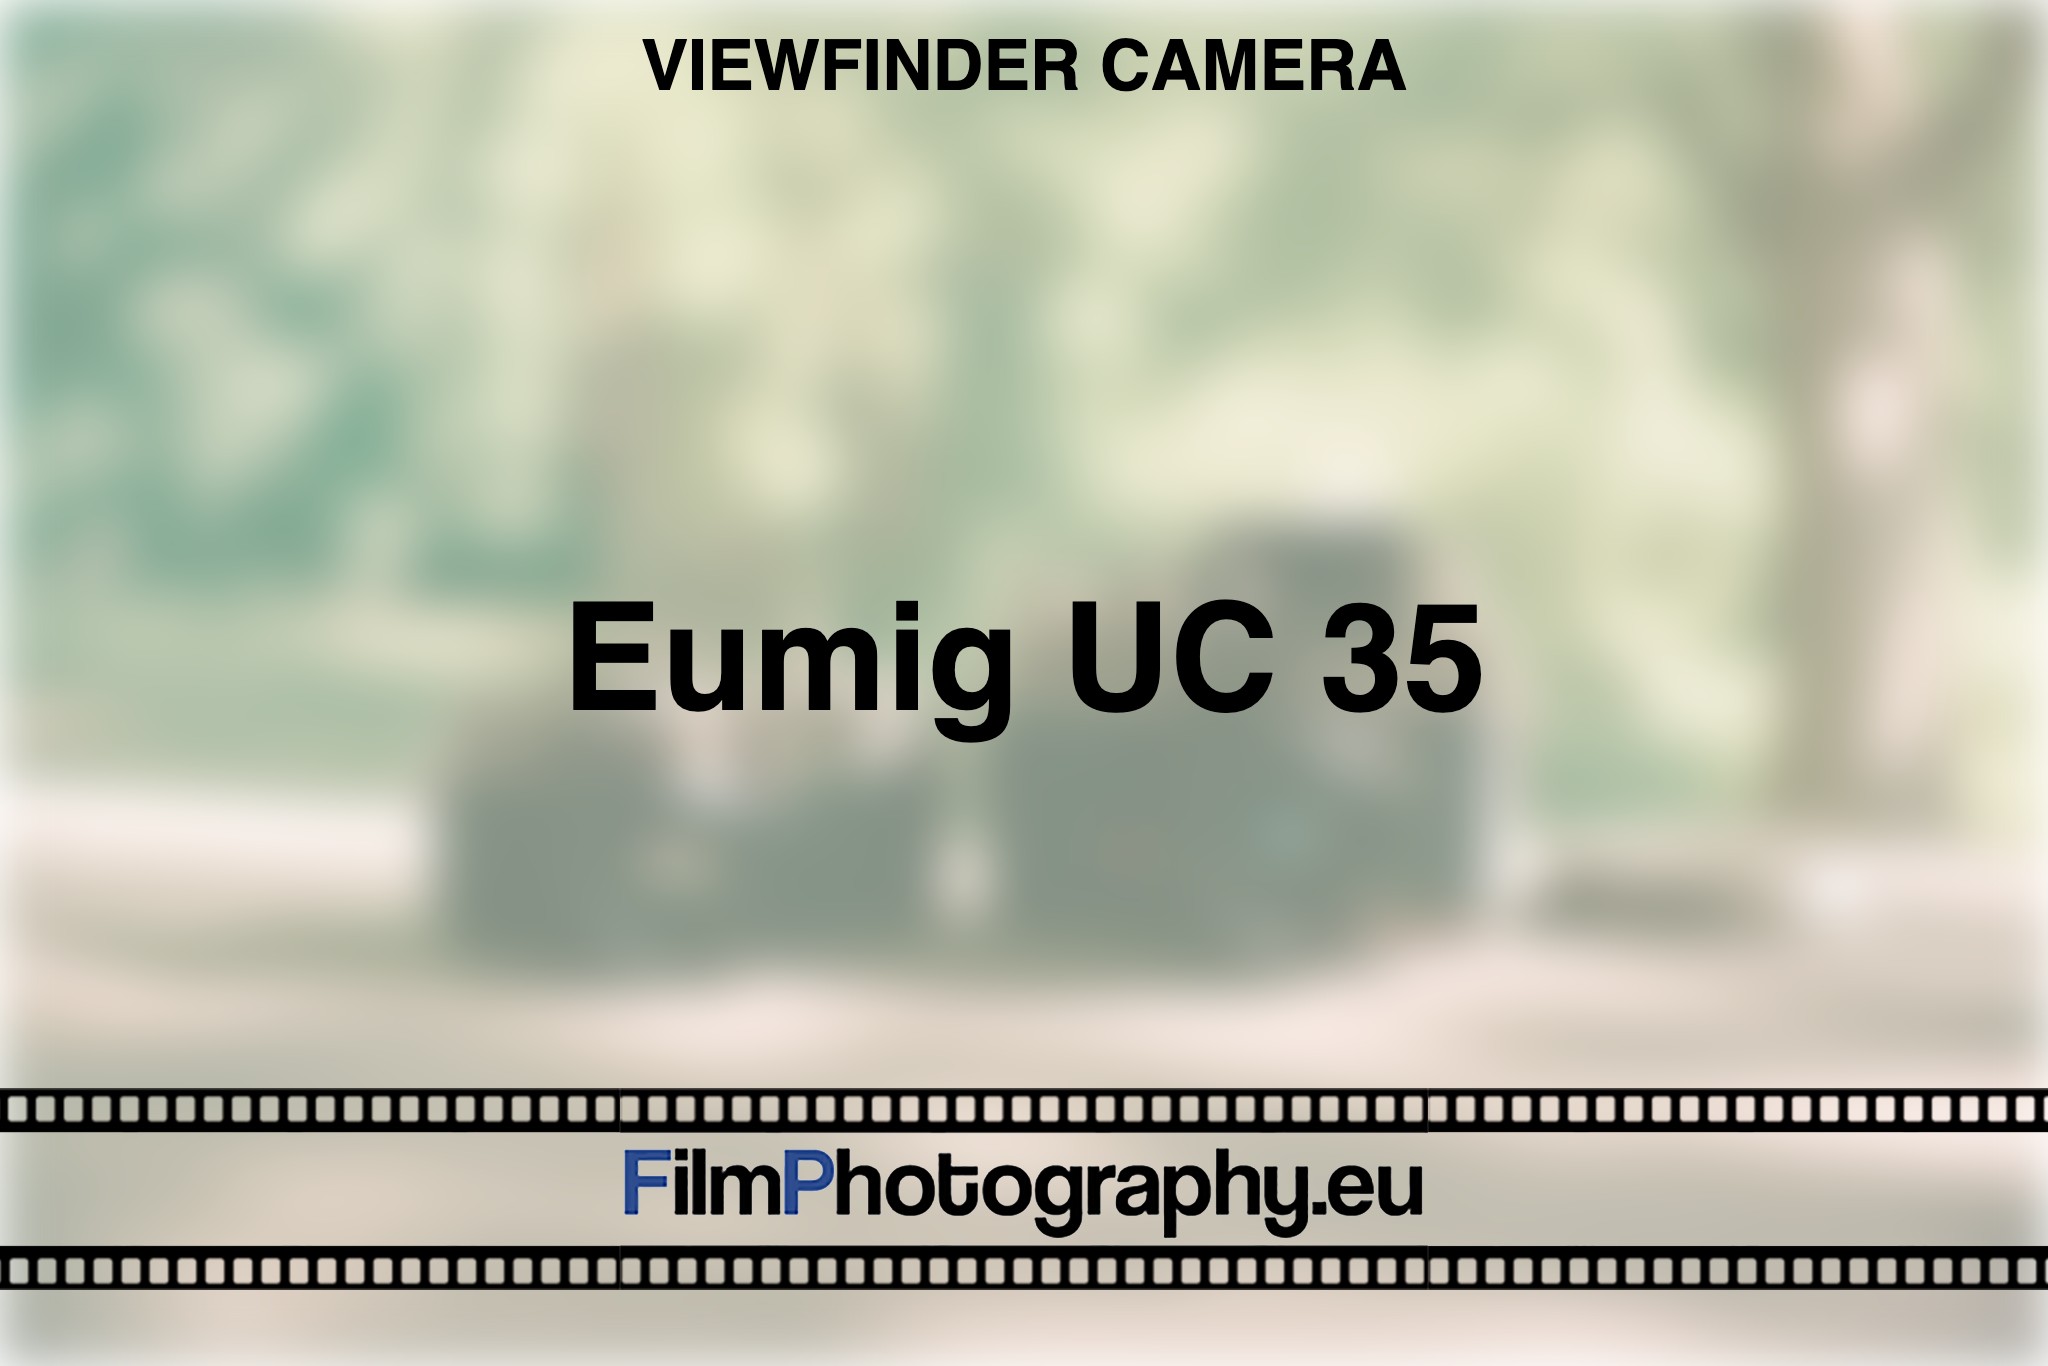 eumig-uc-35-viewfinder-camera-bnv